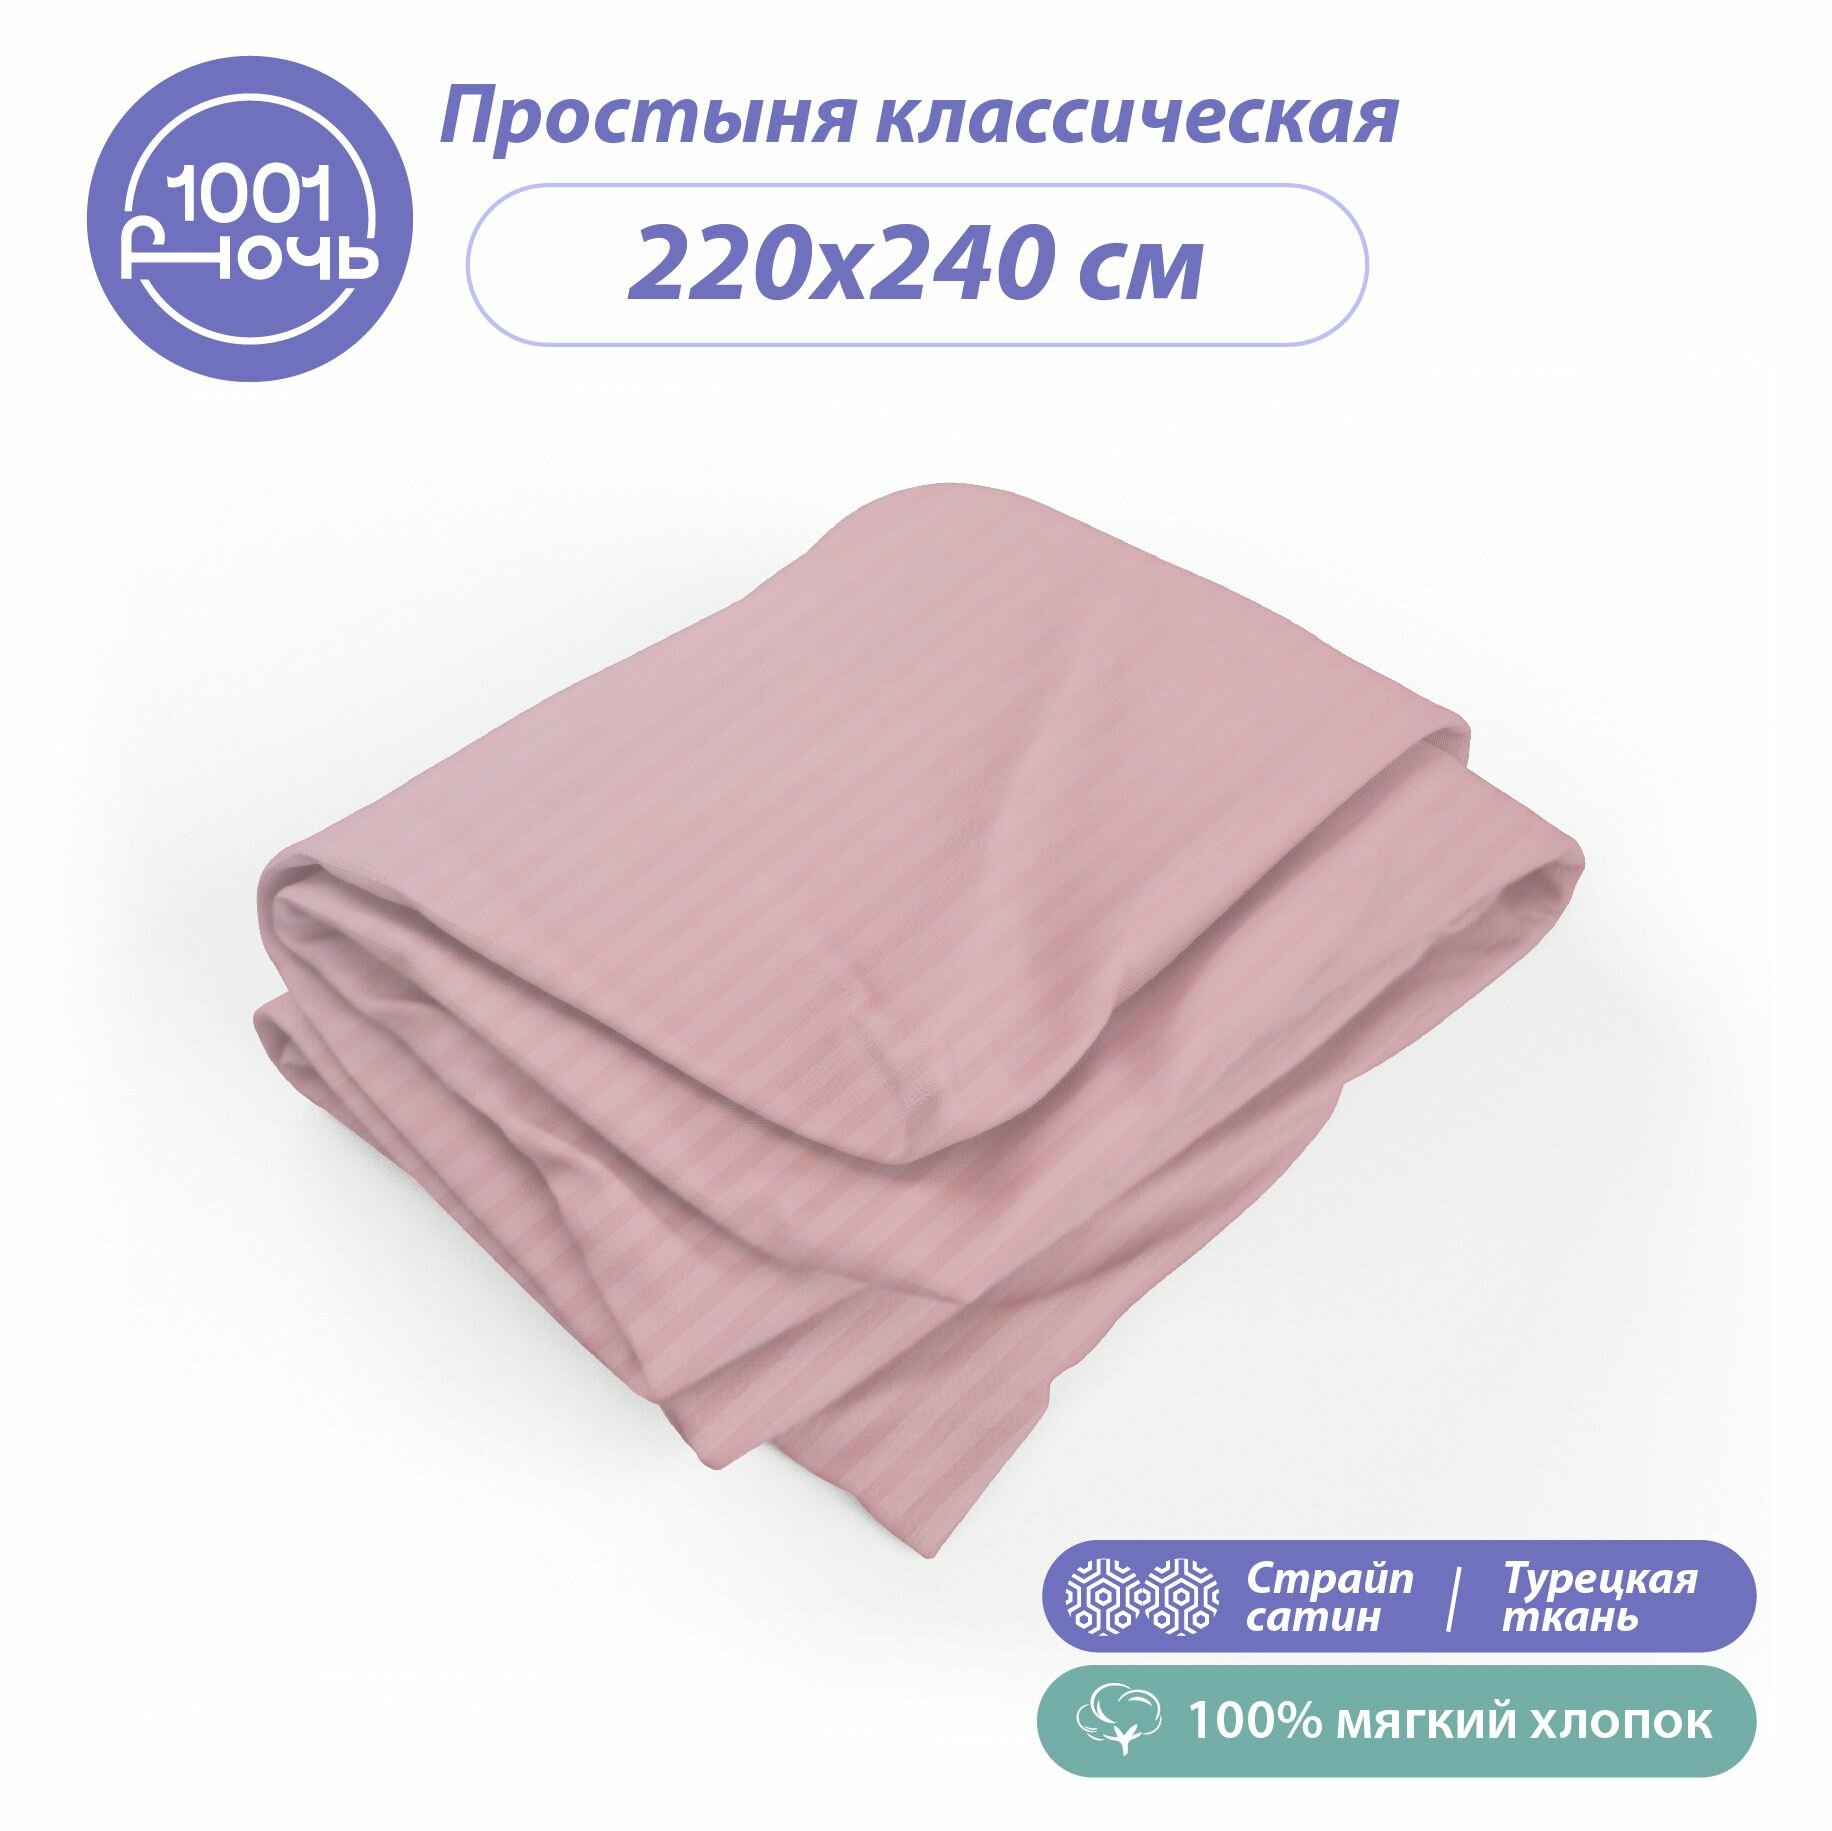 Простыня стандартная страйп сатин розовый 220х240 см, 2-спальная / евро, 100% турецкий хлопок, "1001 ночь"